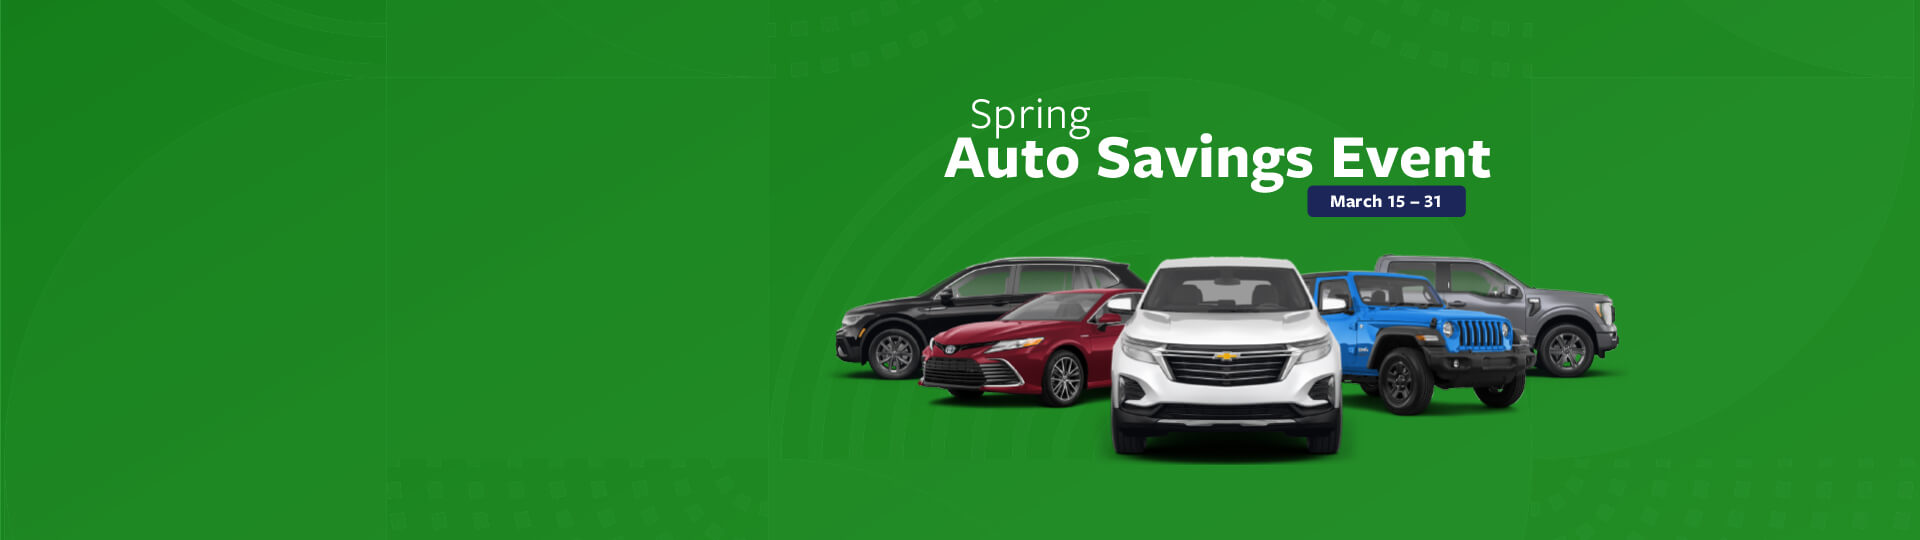 Spring Auto Savings Event